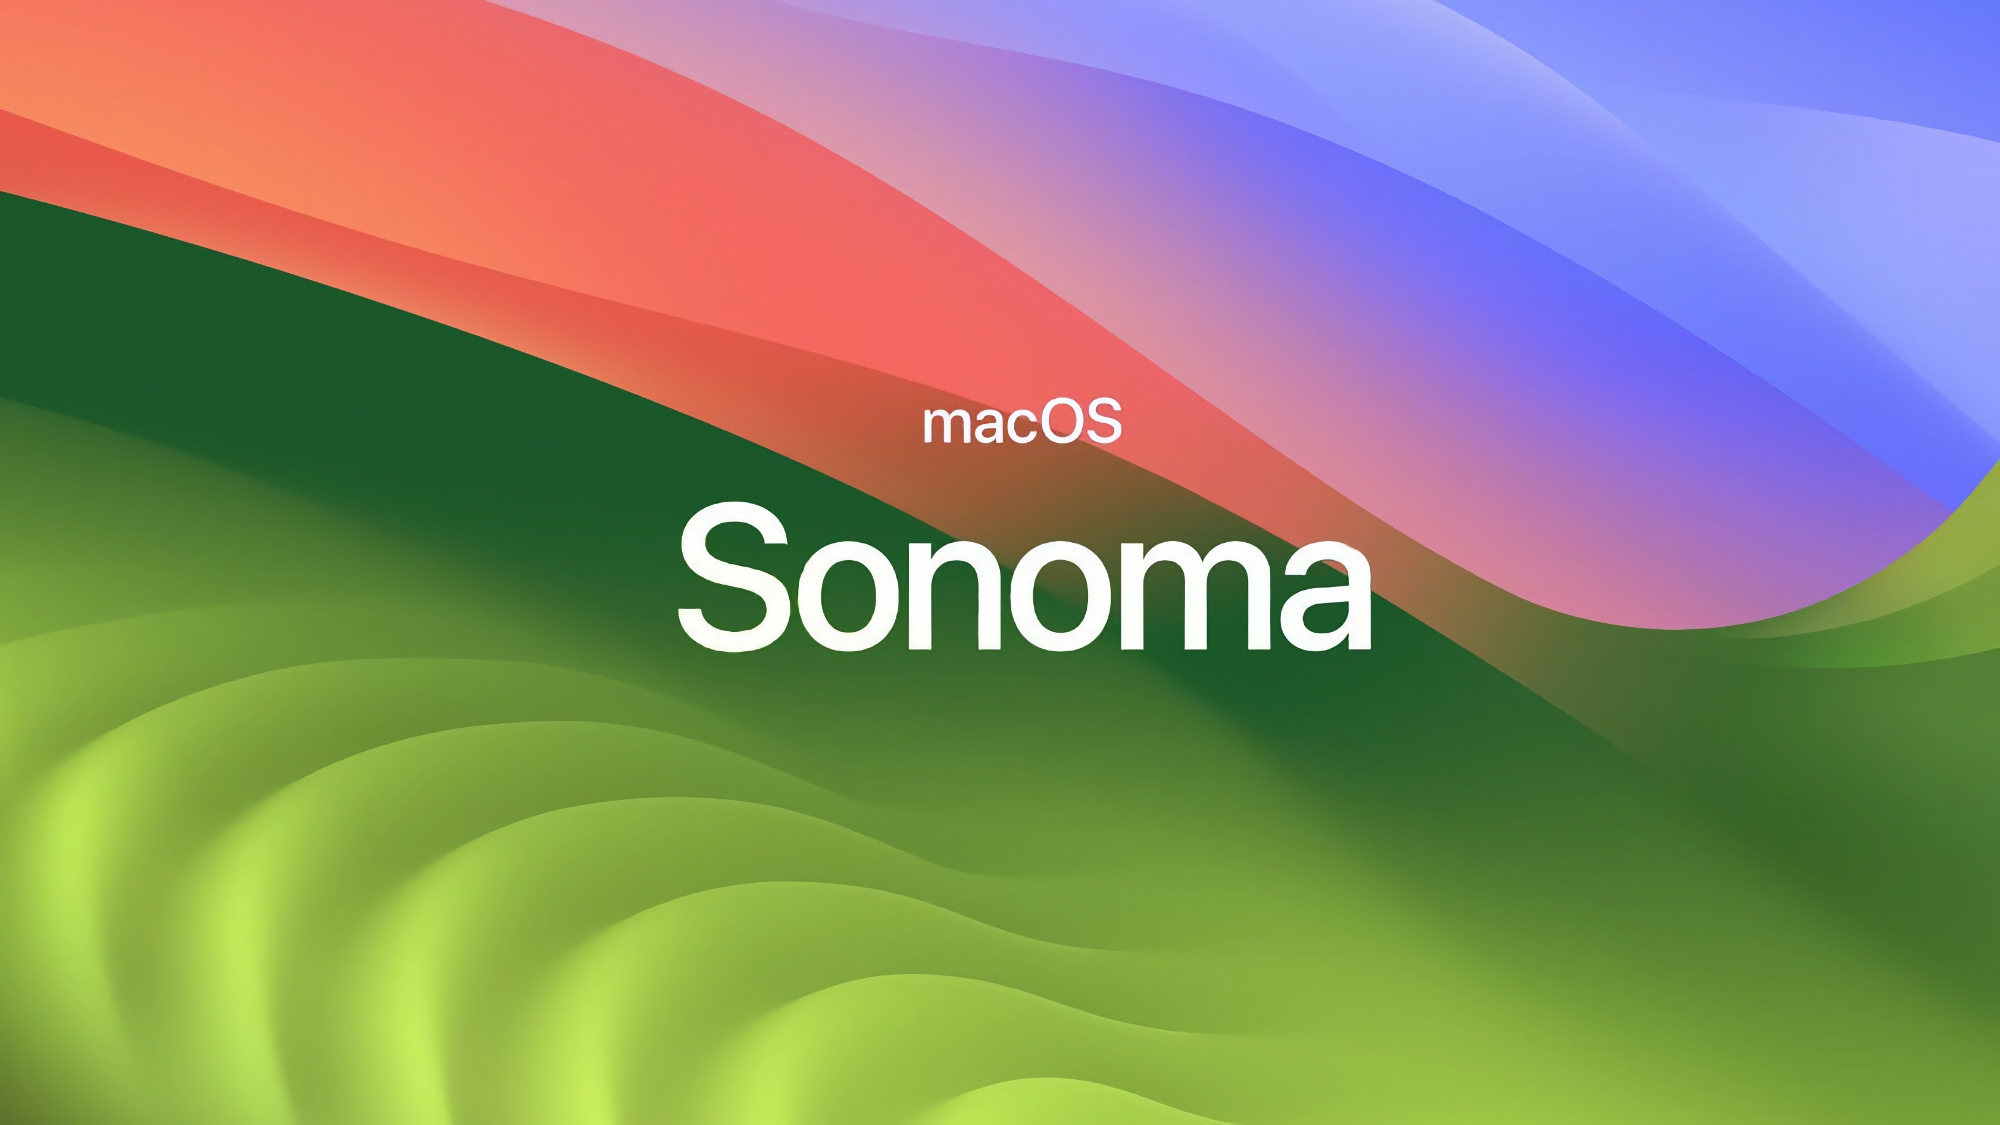 Den stabile version af macOS Sonoma 14.2 er blevet frigivet: Hvad er nyt?